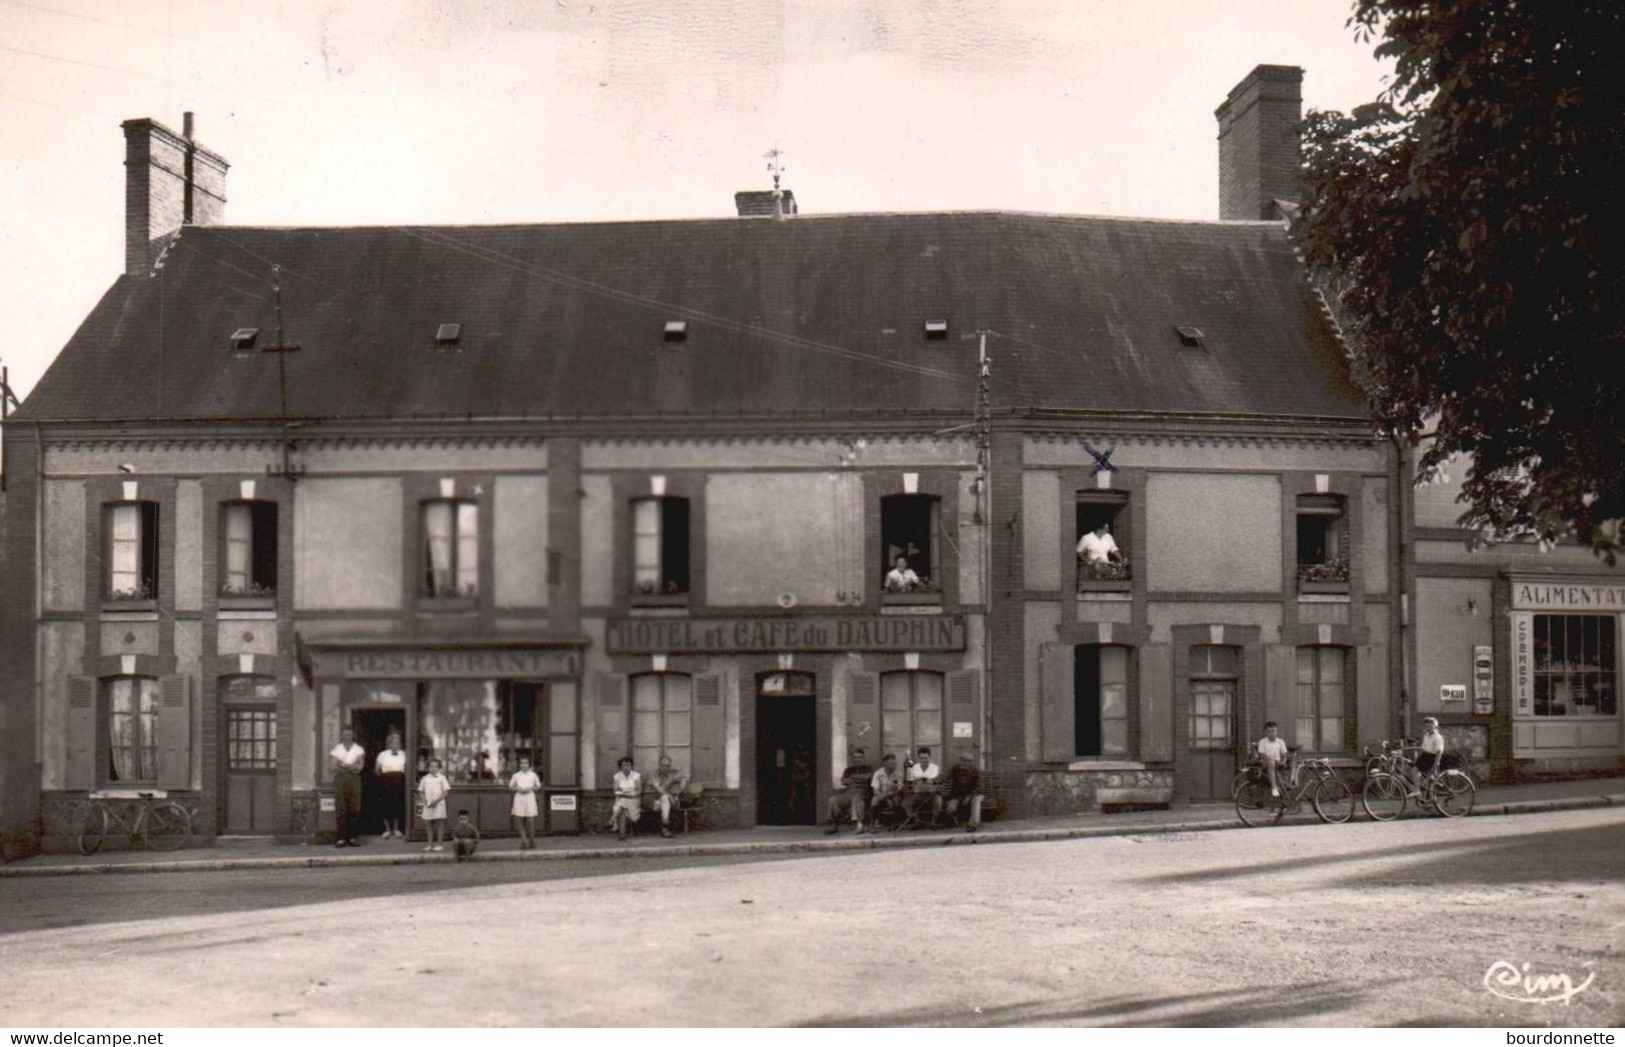 18 - BRINON SUR SAULDRE - Hôtel Du Dauphin - - Brinon-sur-Sauldre